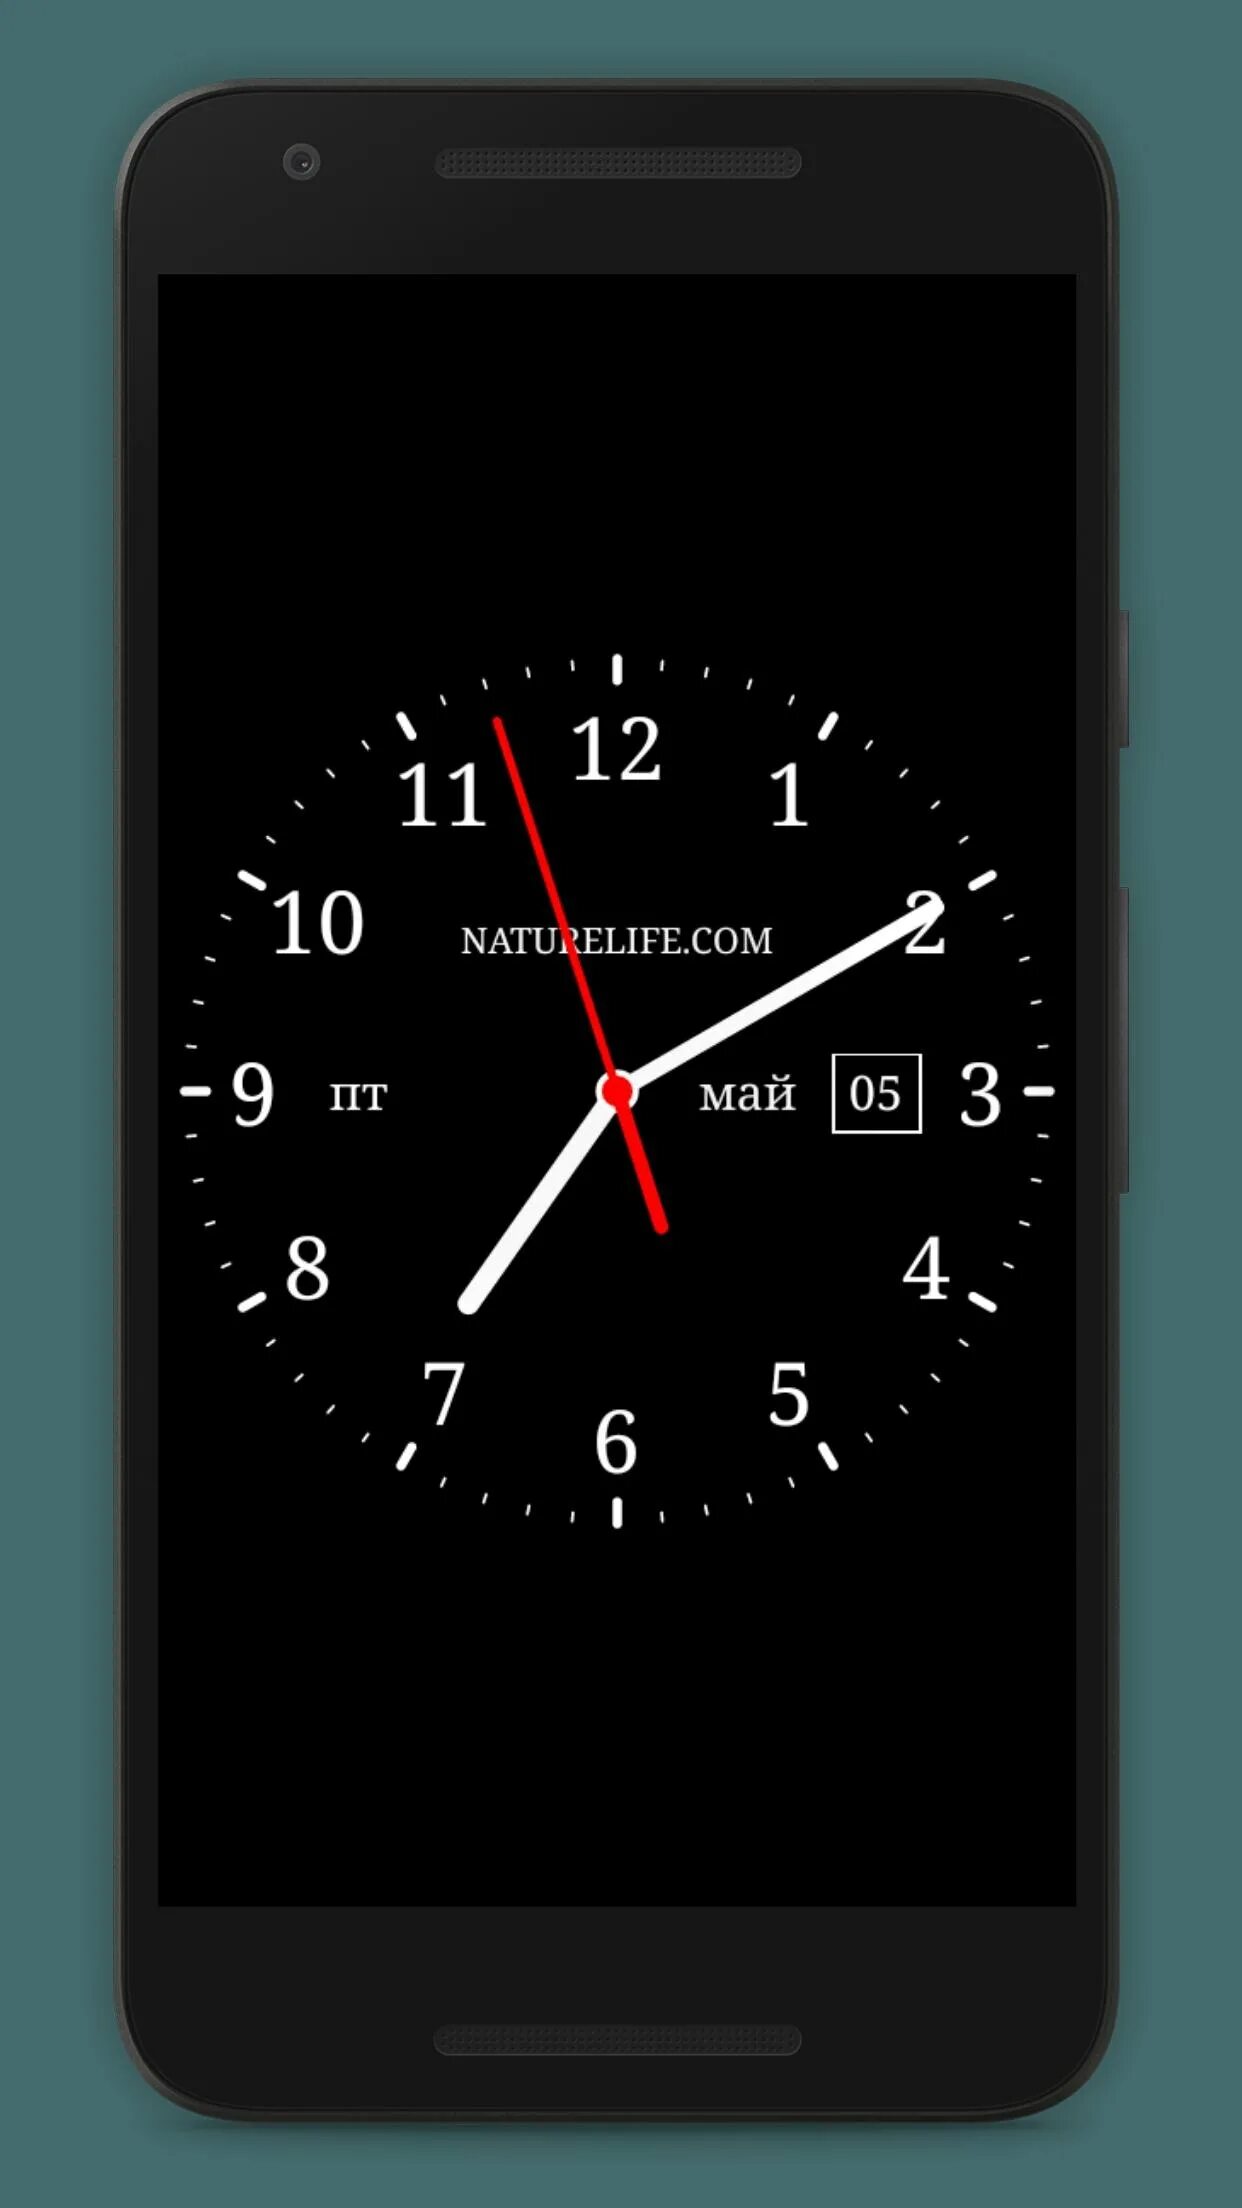 Аналоговые часы для андроид 4.2.2. Аналоговые часы для андроид Samsung a 260. Аналоговые часы для андроид. Часы на экран смартфона. Установить аналоговые часы